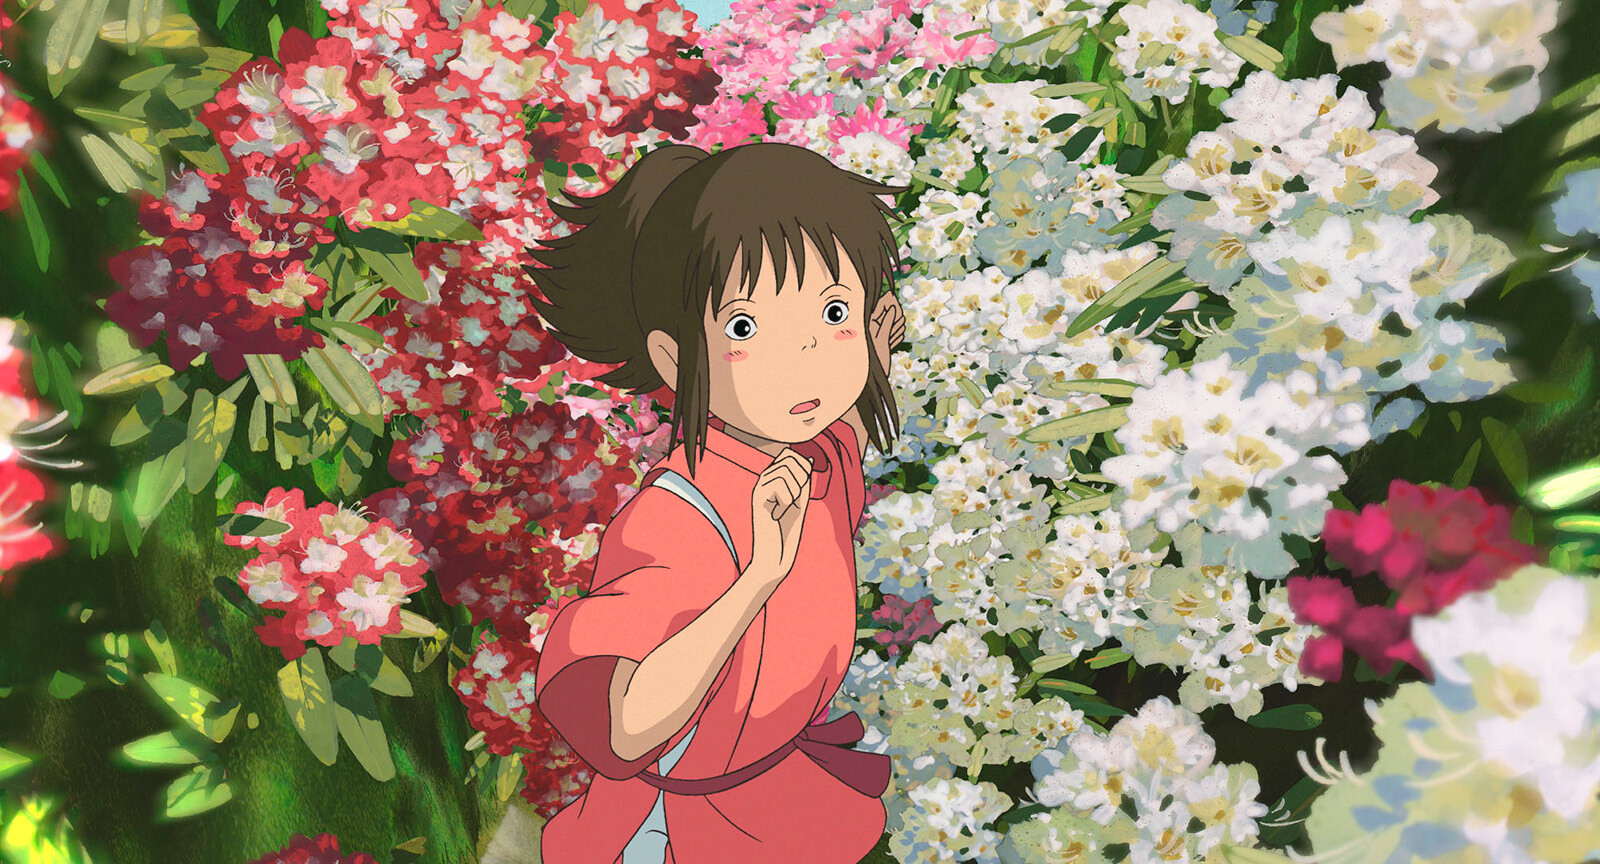 Студия Ghibli не покажет трейлер и кадры из нового мультфильма Хаяо Миядзаки